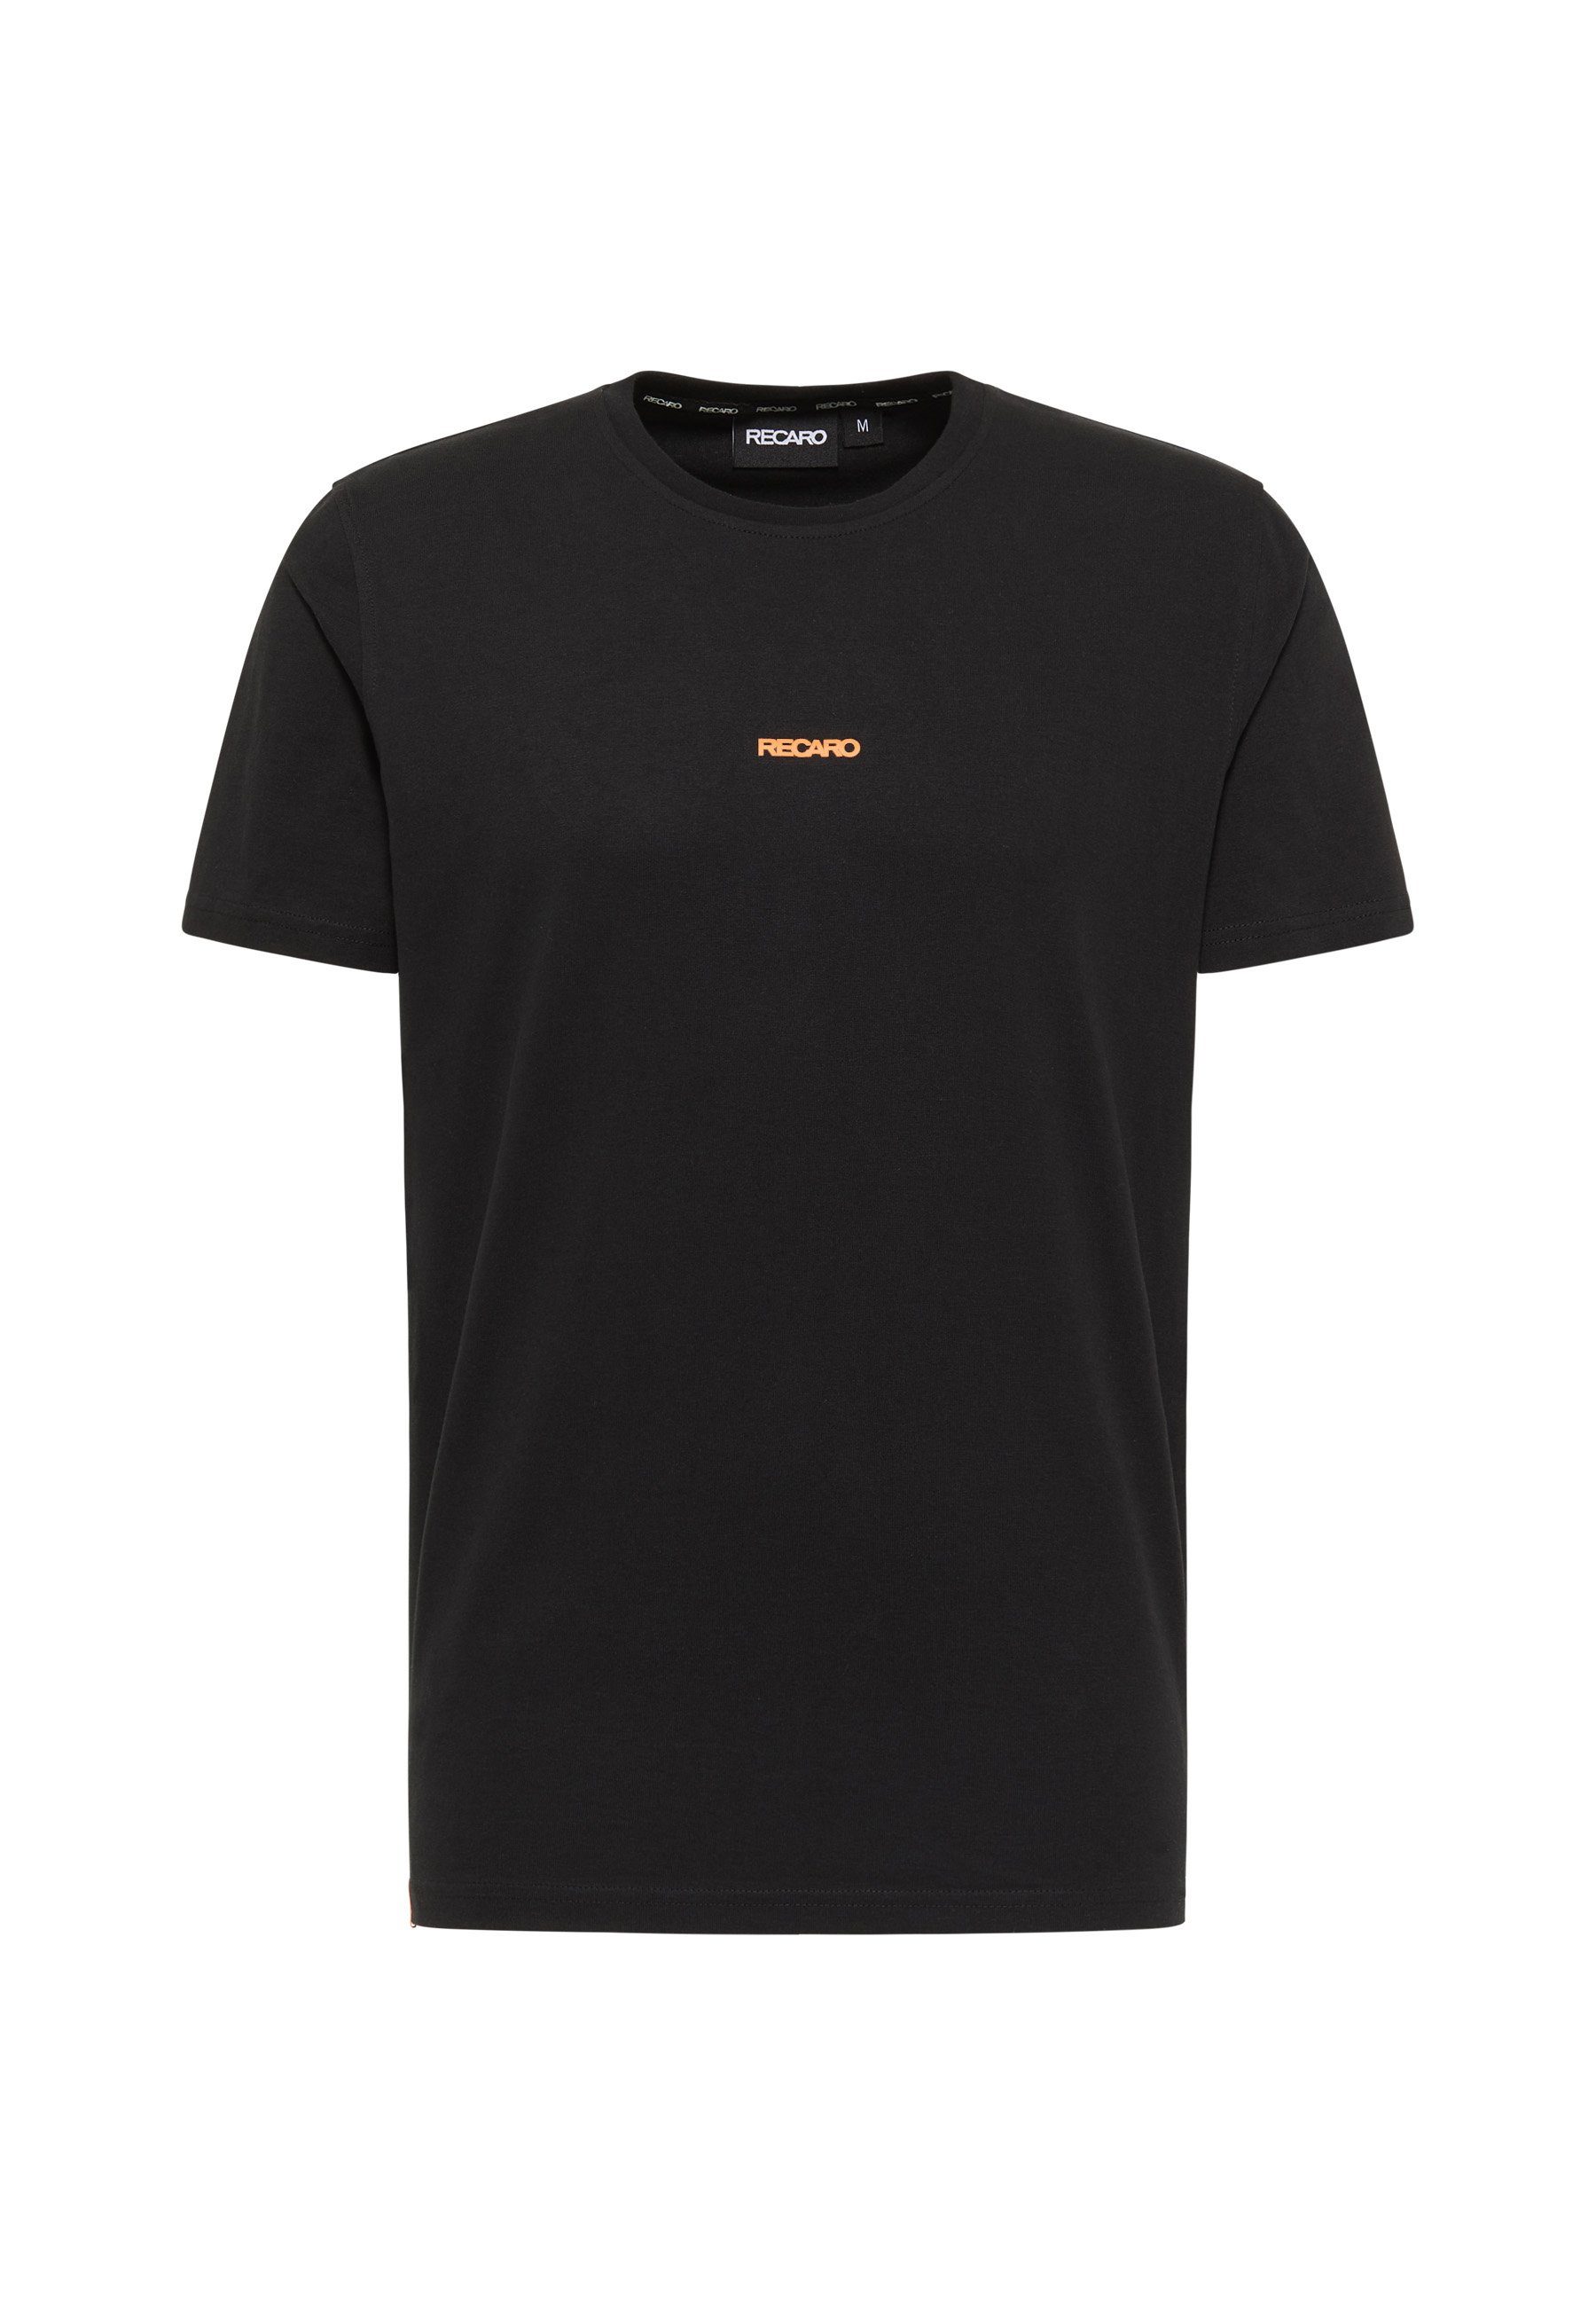 Herren Shirts RECARO T-Shirt RECARO T-Shirt Backprint, Herren Shirt, Rundhals, 100% Baumwolle, Made in Europe